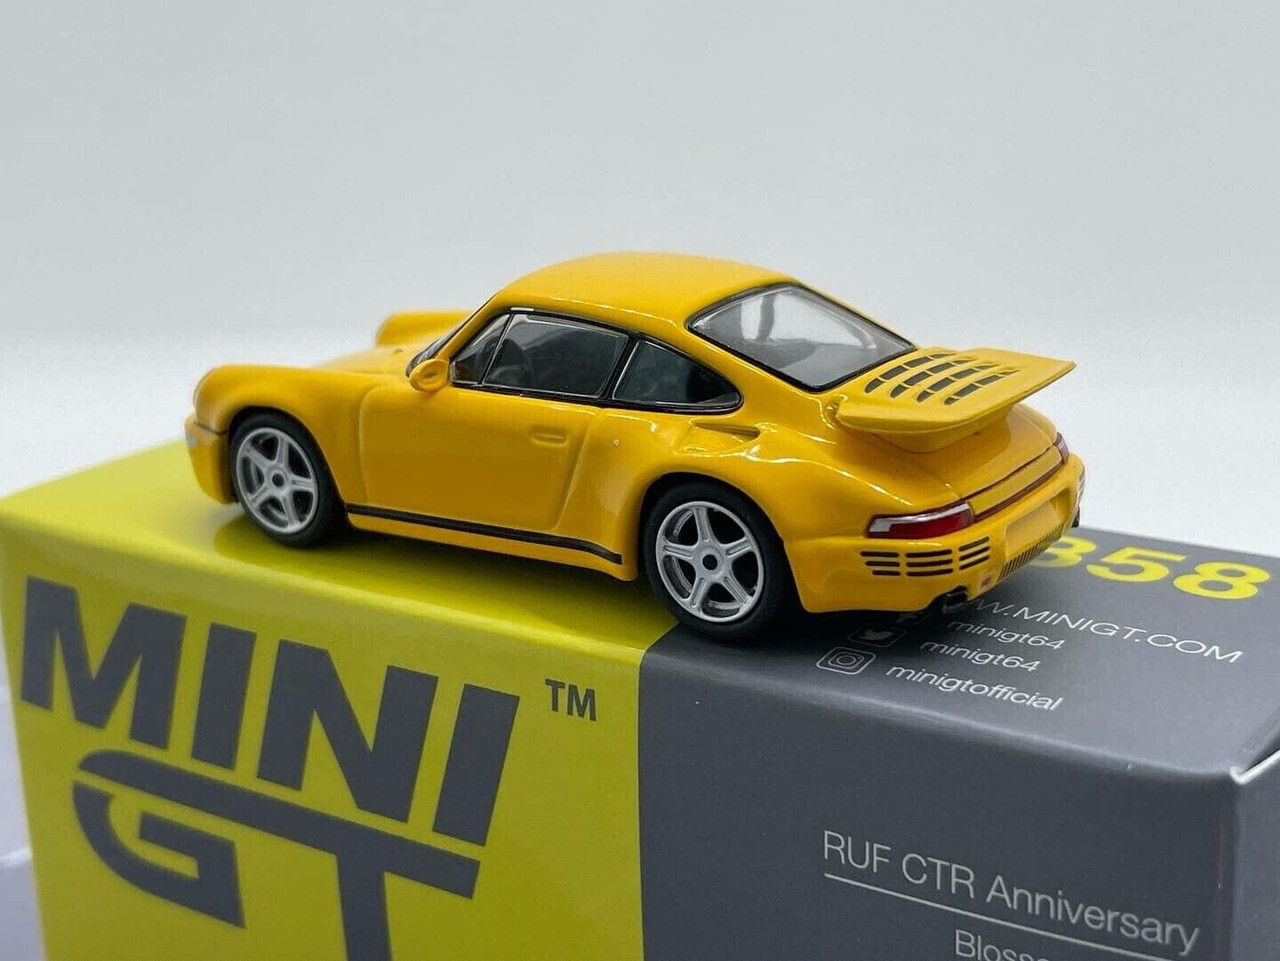 MiniGT 1/64 Porsche 911 Turbo S Racing Yellow